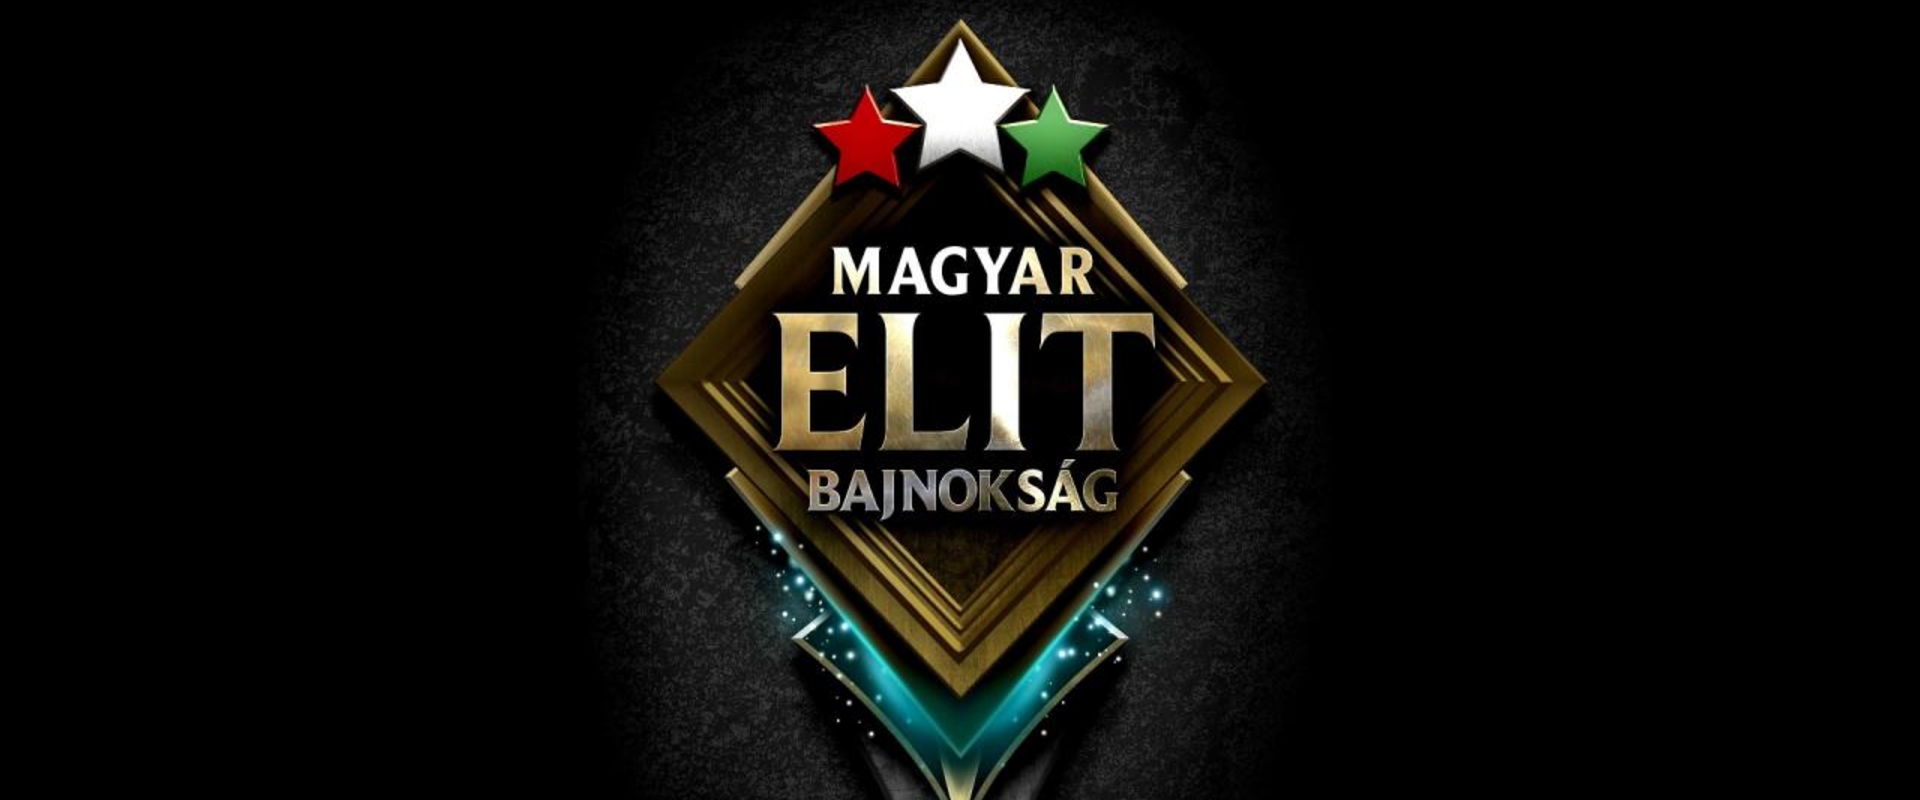 Végre valahára, bejelentették a Magyar Elit Bajnokság második szezonját!